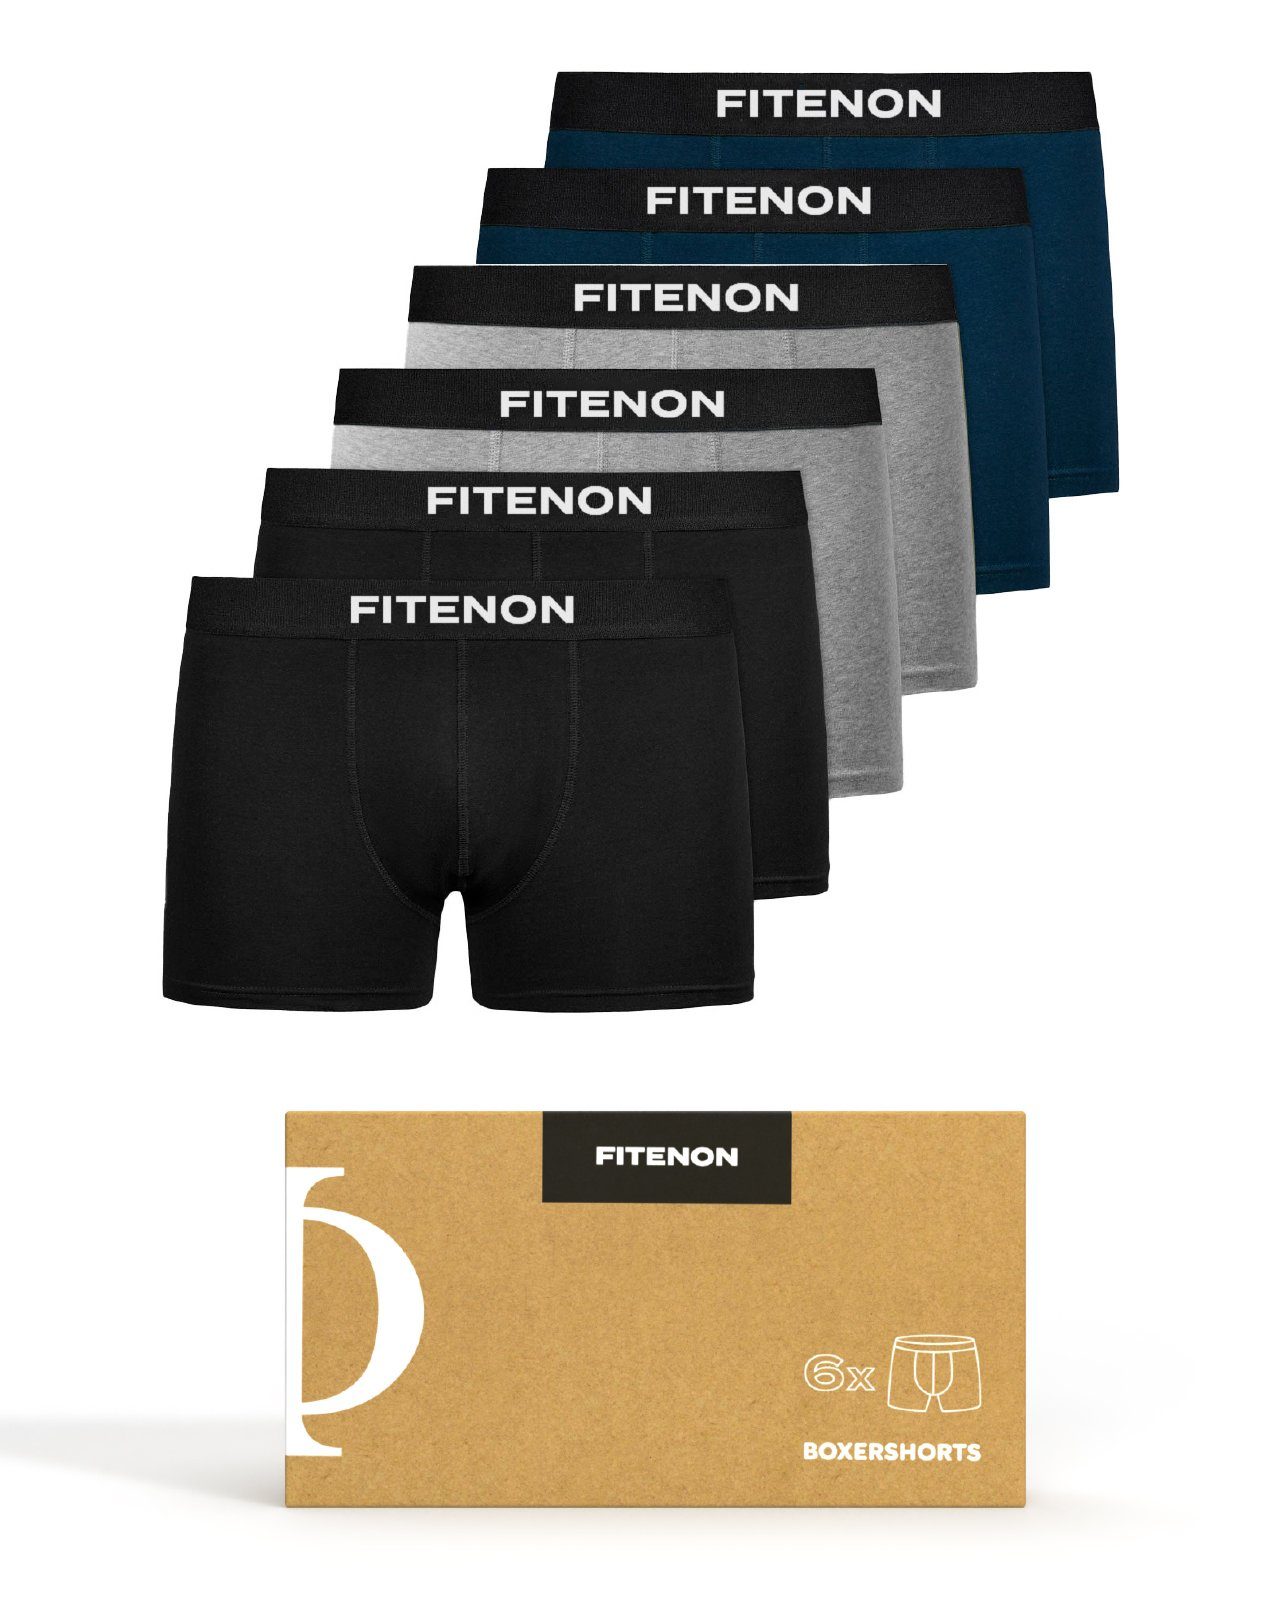 FITENON Boxershorts Herren Unterhosen, Unterwäsche, ohne kratzenden Zettel, Baumwolle (6 er Set) mit Logo-Elastikbund 2x Schwarz 2x Grau 2x Navy